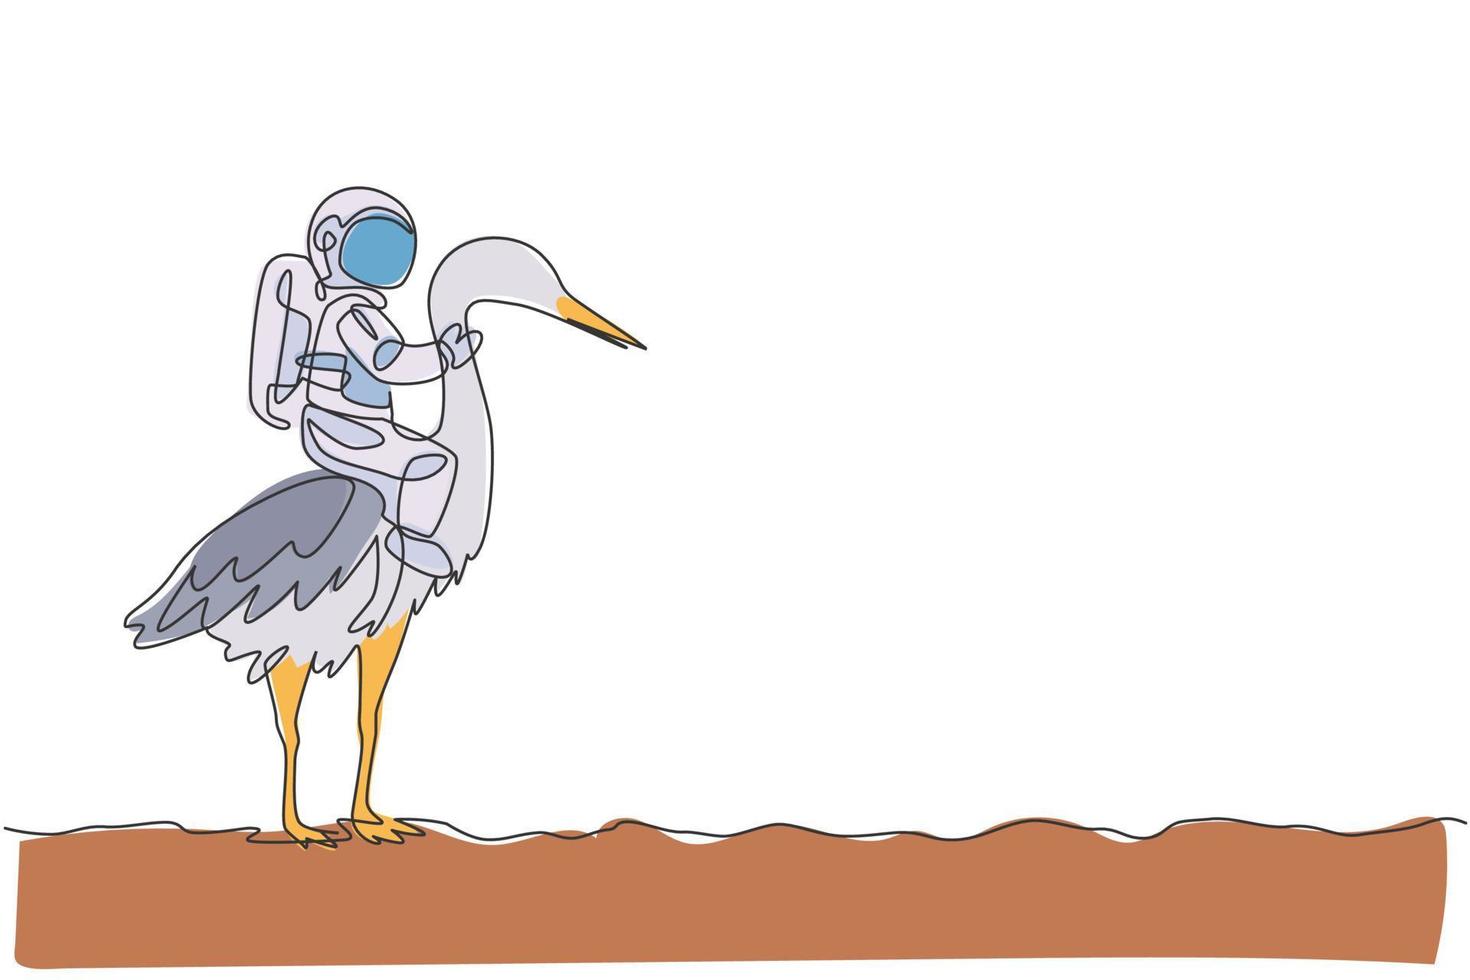 un singolo disegno a tratteggio dell'uccello dell'airone di guida dell'astronauta, animale selvatico nell'illustrazione di vettore della superficie della luna. concetto di viaggio safari cosmonauta. moderno disegno grafico a linea continua